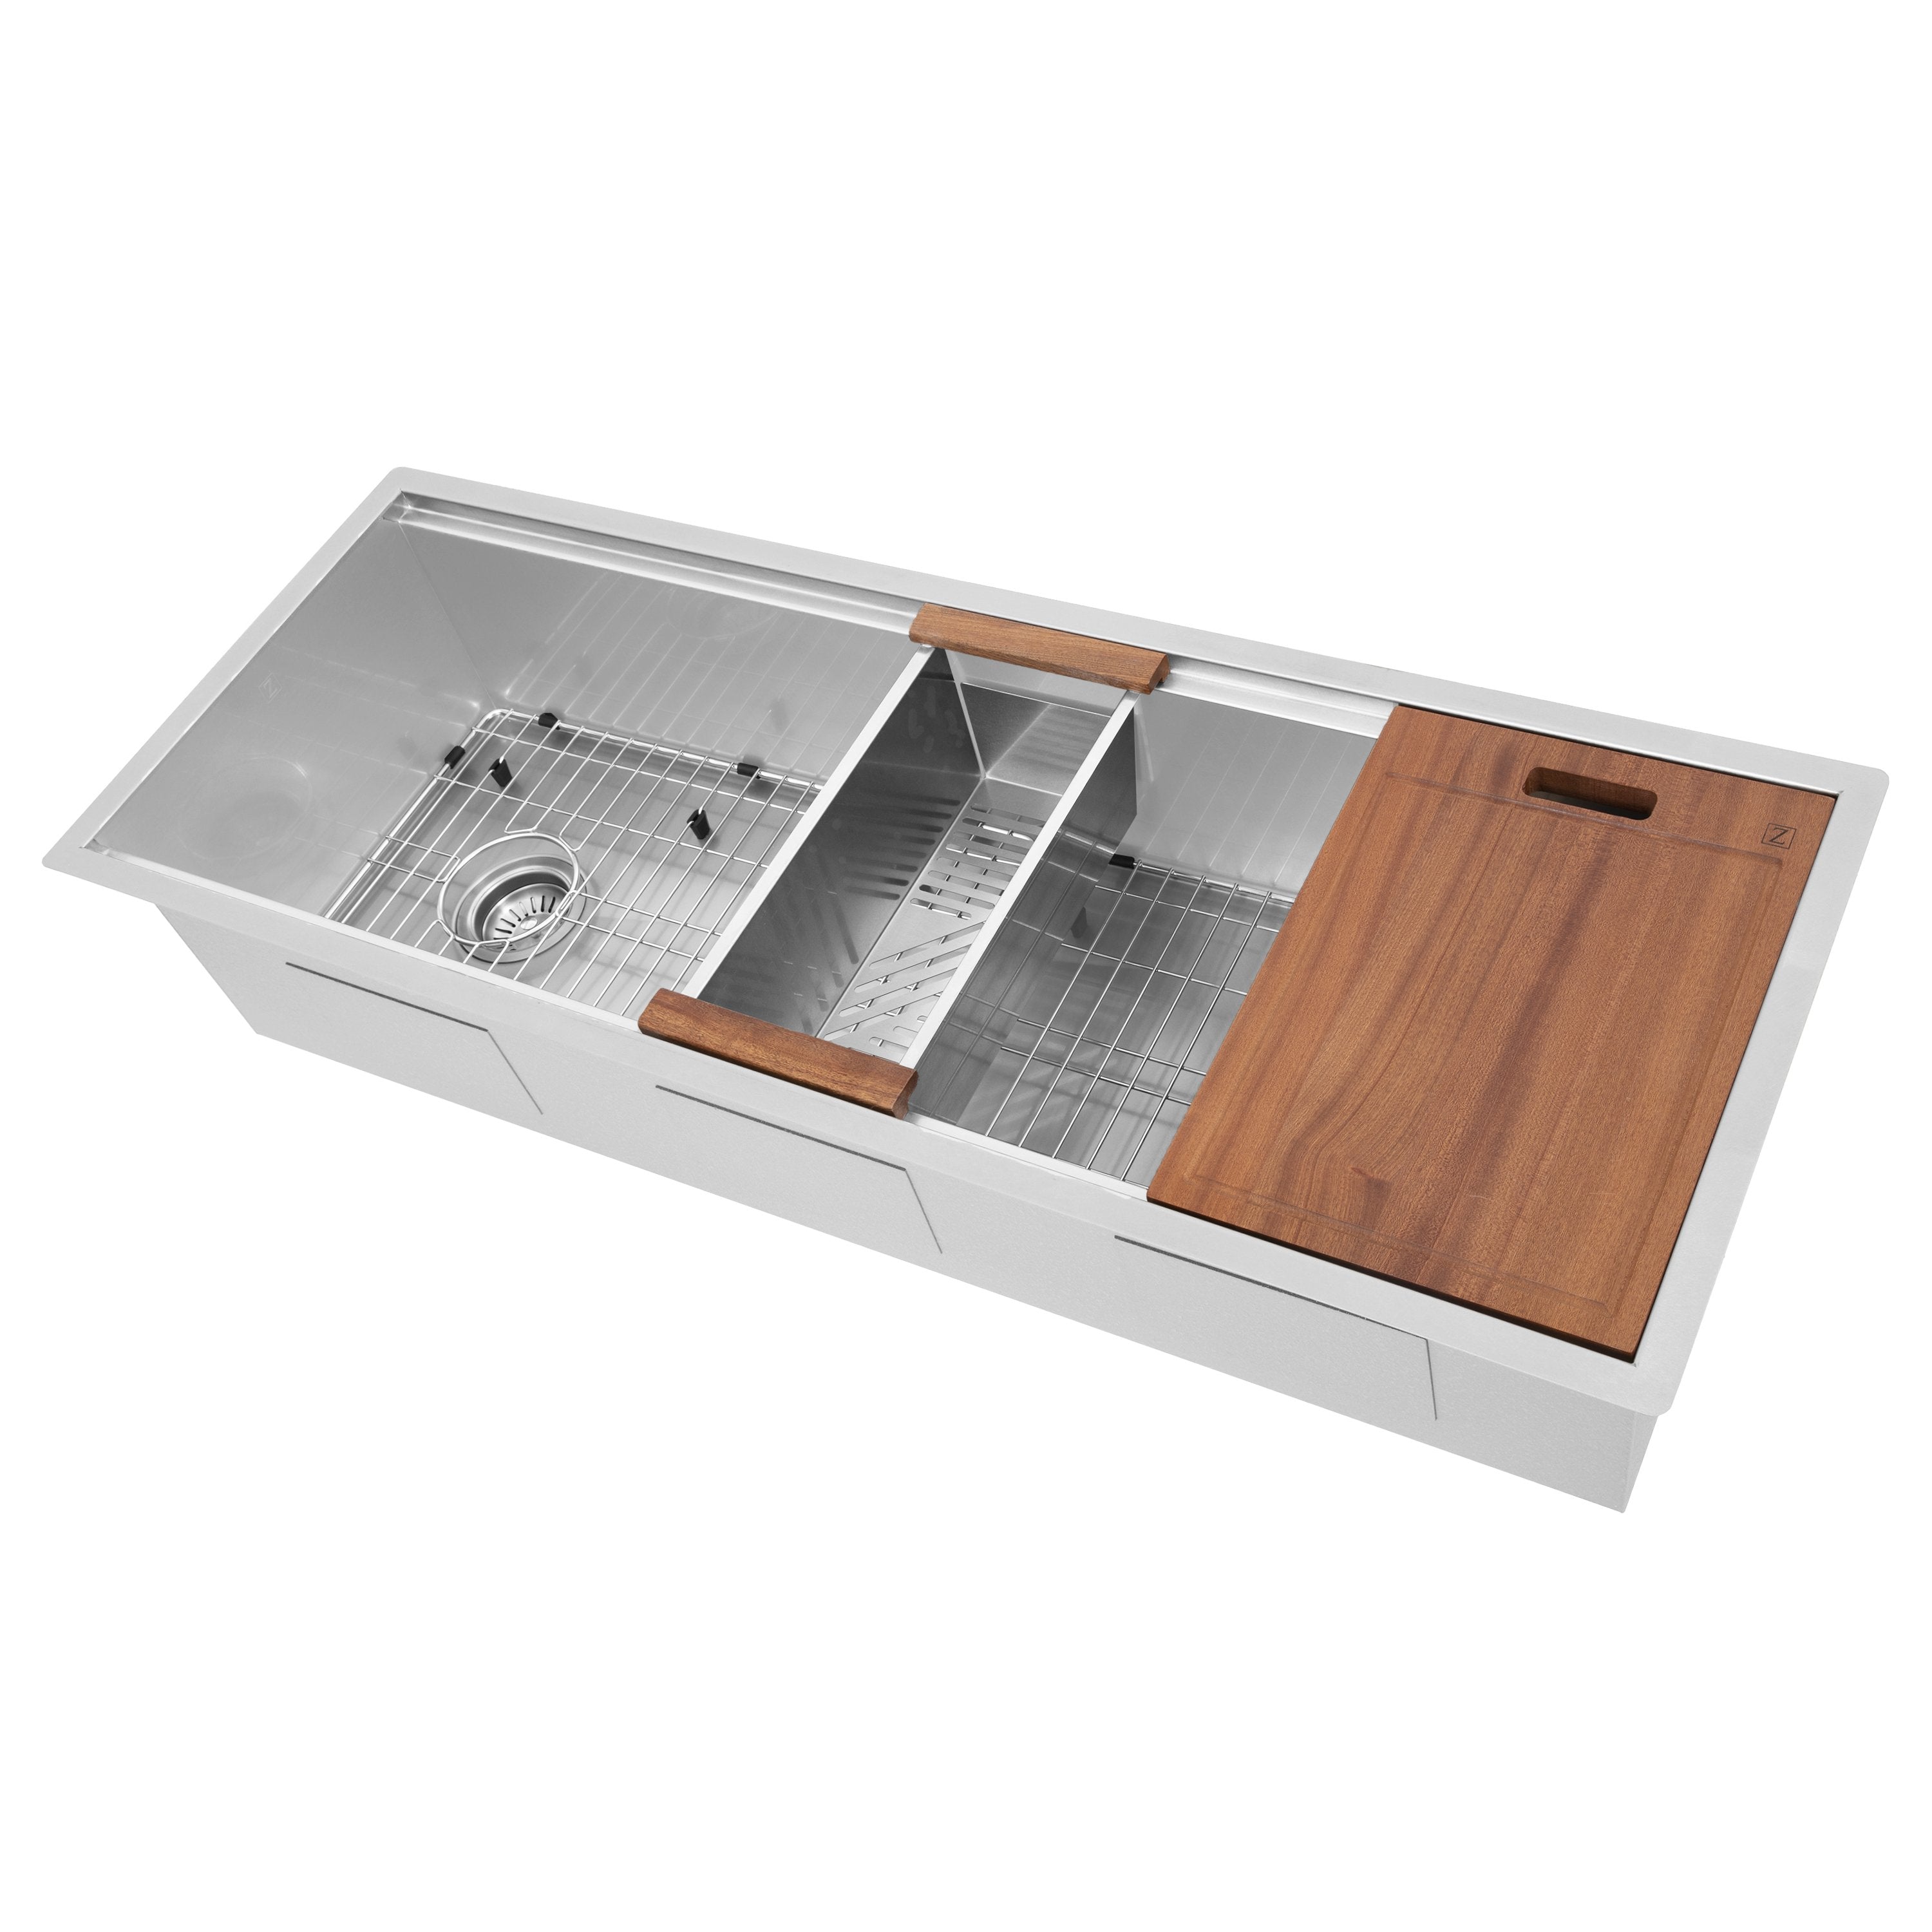 ZLINE Kitchen and Bath, ZLINE Garmisch 45 Inch Undermount Single Bowl Sink with Accessories (SLS-45), SLS-45,